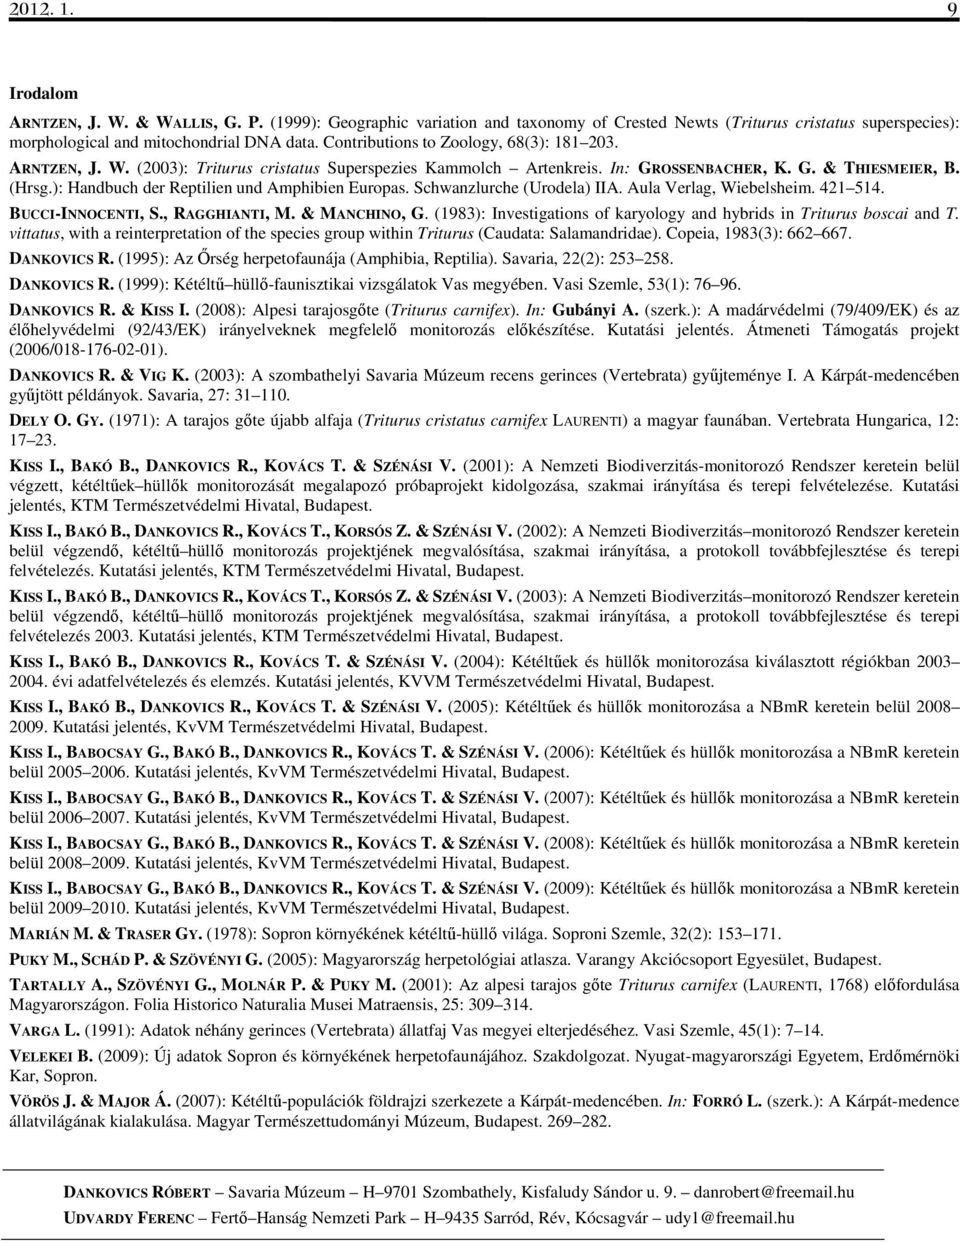 ): Handbuch der Reptilien und Amphibien Europas. Schwanzlurche (Urodela) IIA. Aula Verlag, Wiebelsheim. 421 514. BUCCI-INNOCENTI, S., RAGGHIANTI, M. & MANCHINO, G.